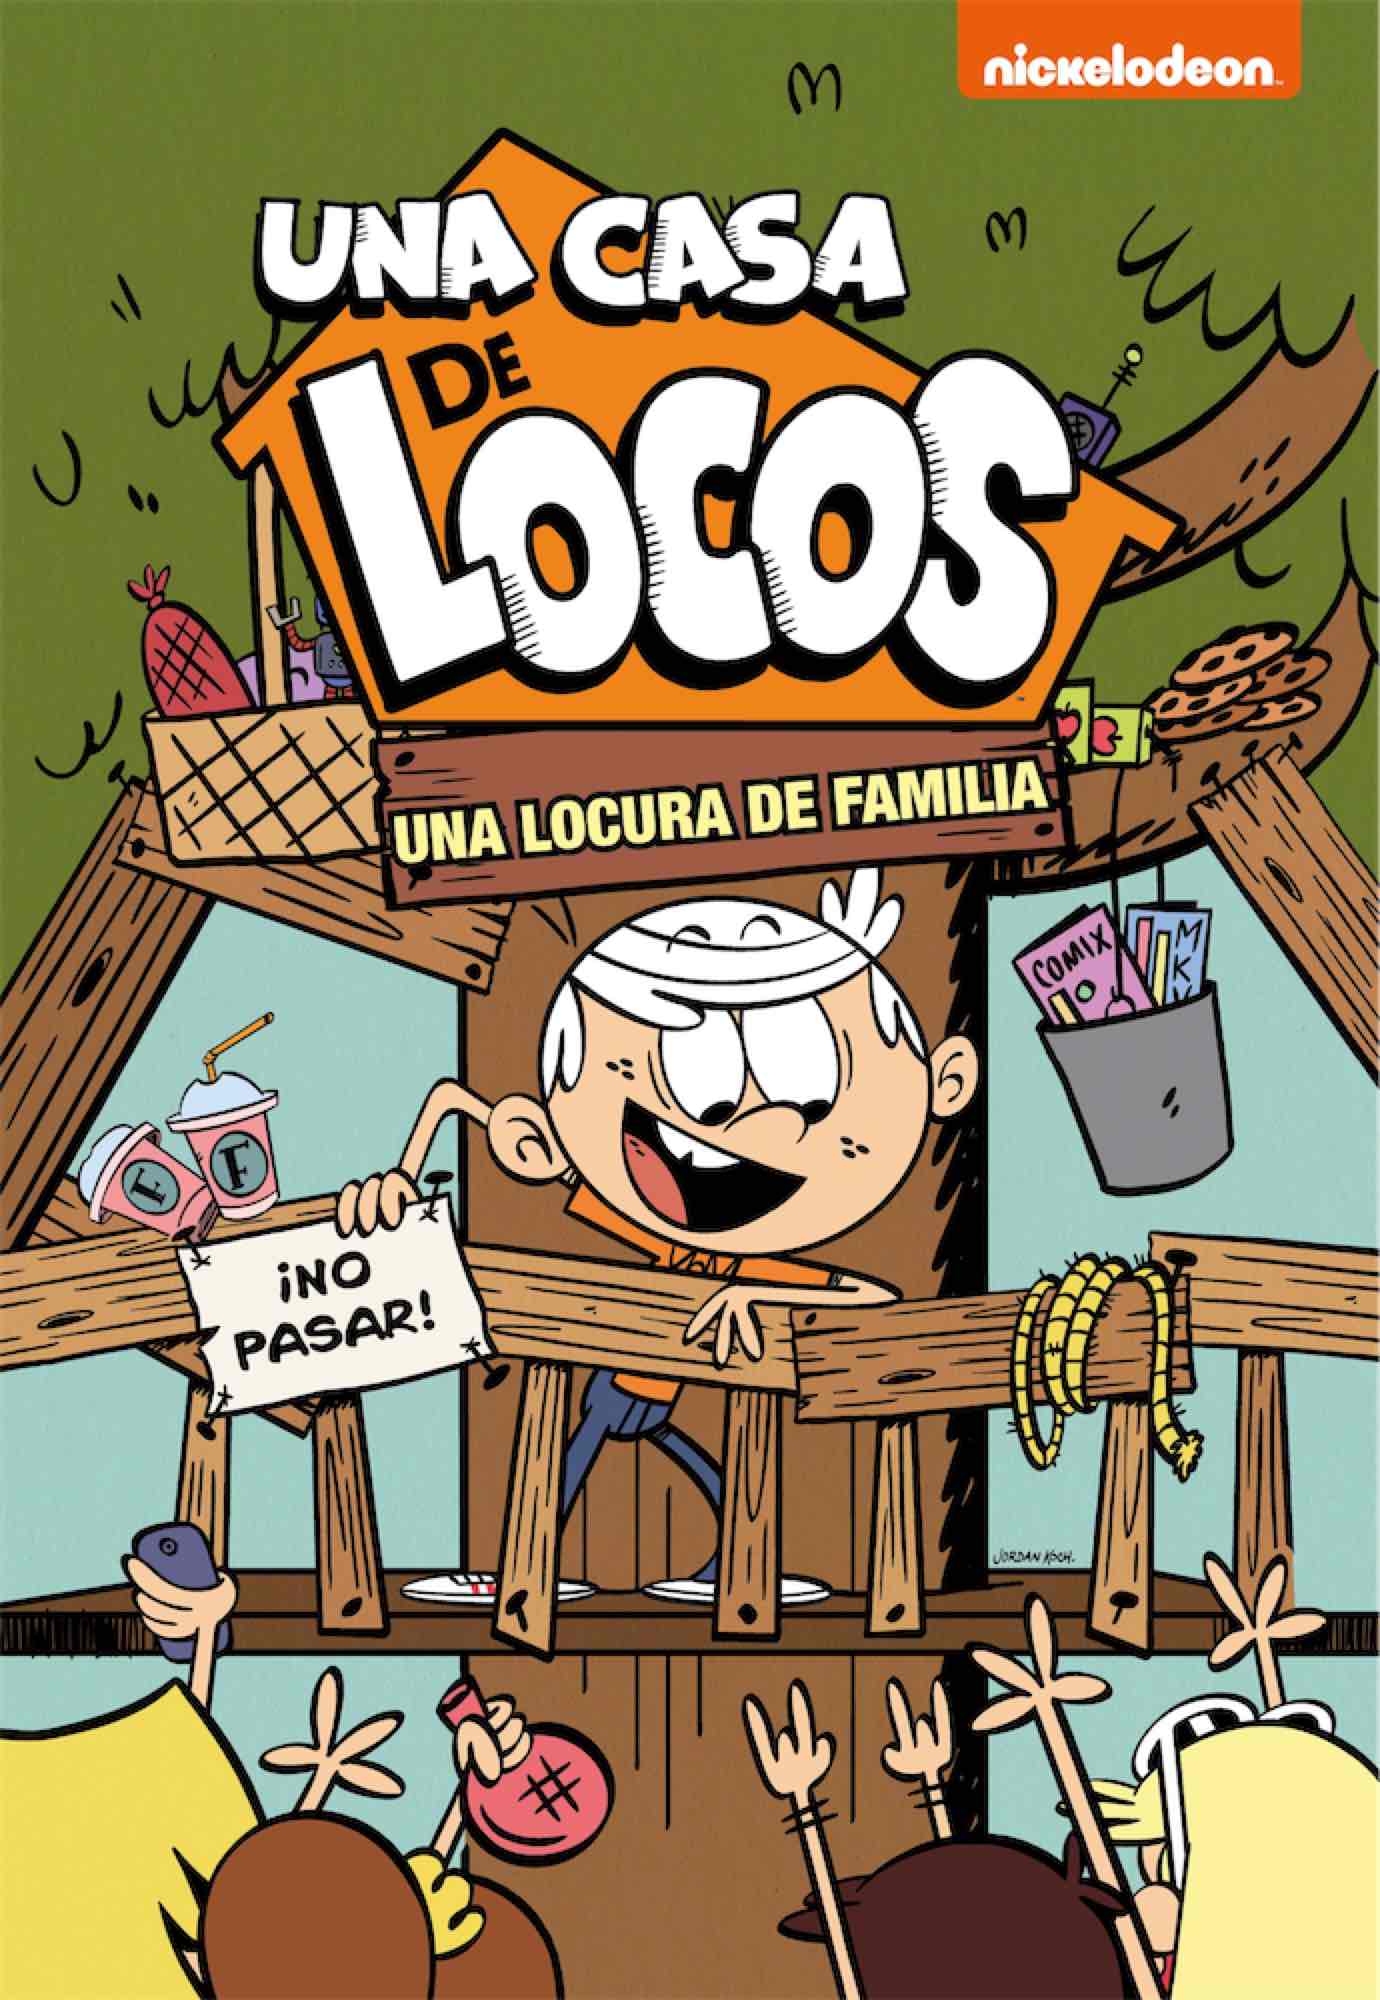 UNA LOCURA DE FAMILIA  (UNA CASA DE LOCOS 04. COMIC)